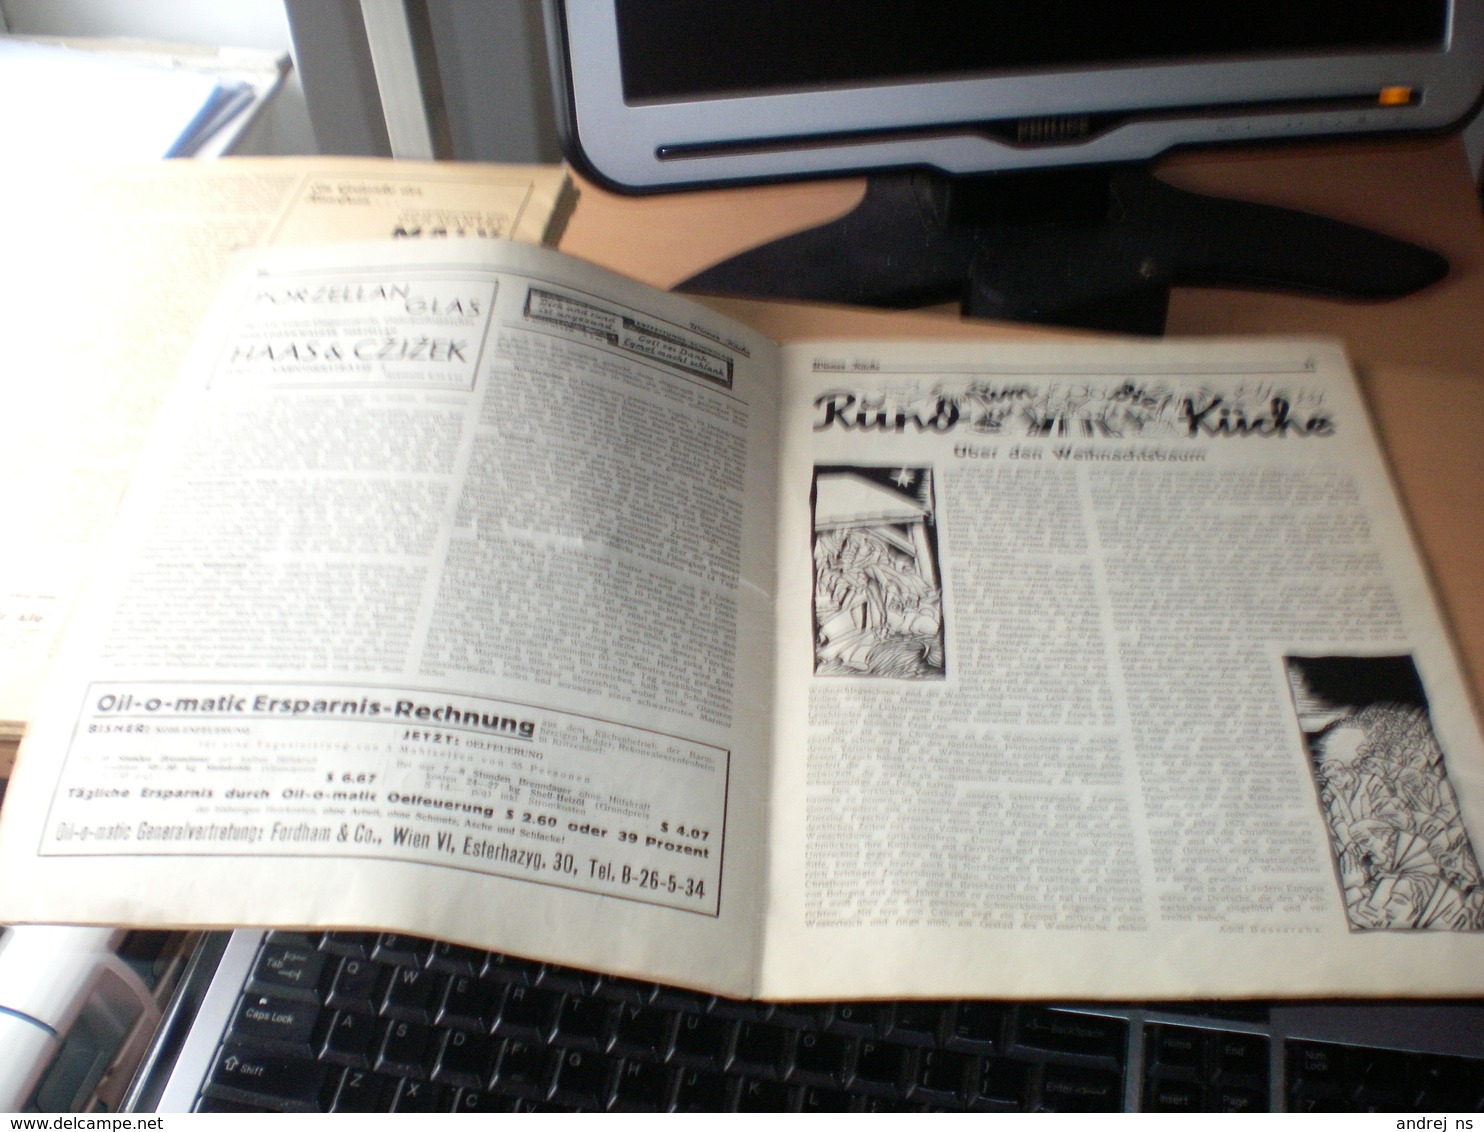 Wiener Kuche Herausgegeben Von Kuchenchef Franz Ruhm Nr 62 Wien 1935 24 Pages - Mangiare & Bere